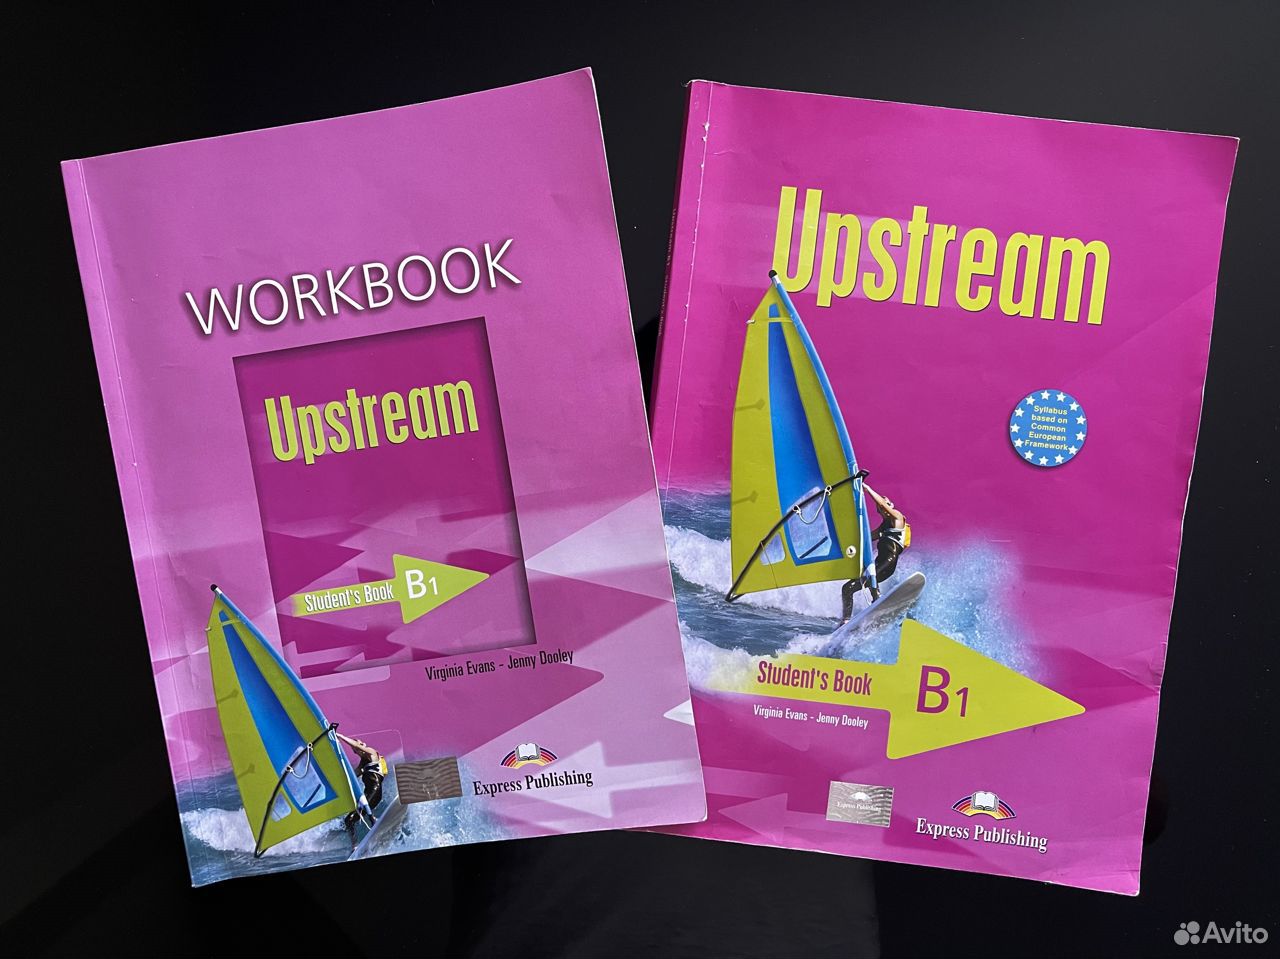 Upstream elementary. Upstream Workbook. Upstream b1 student's book. Upstream Elementary a2 student's book.